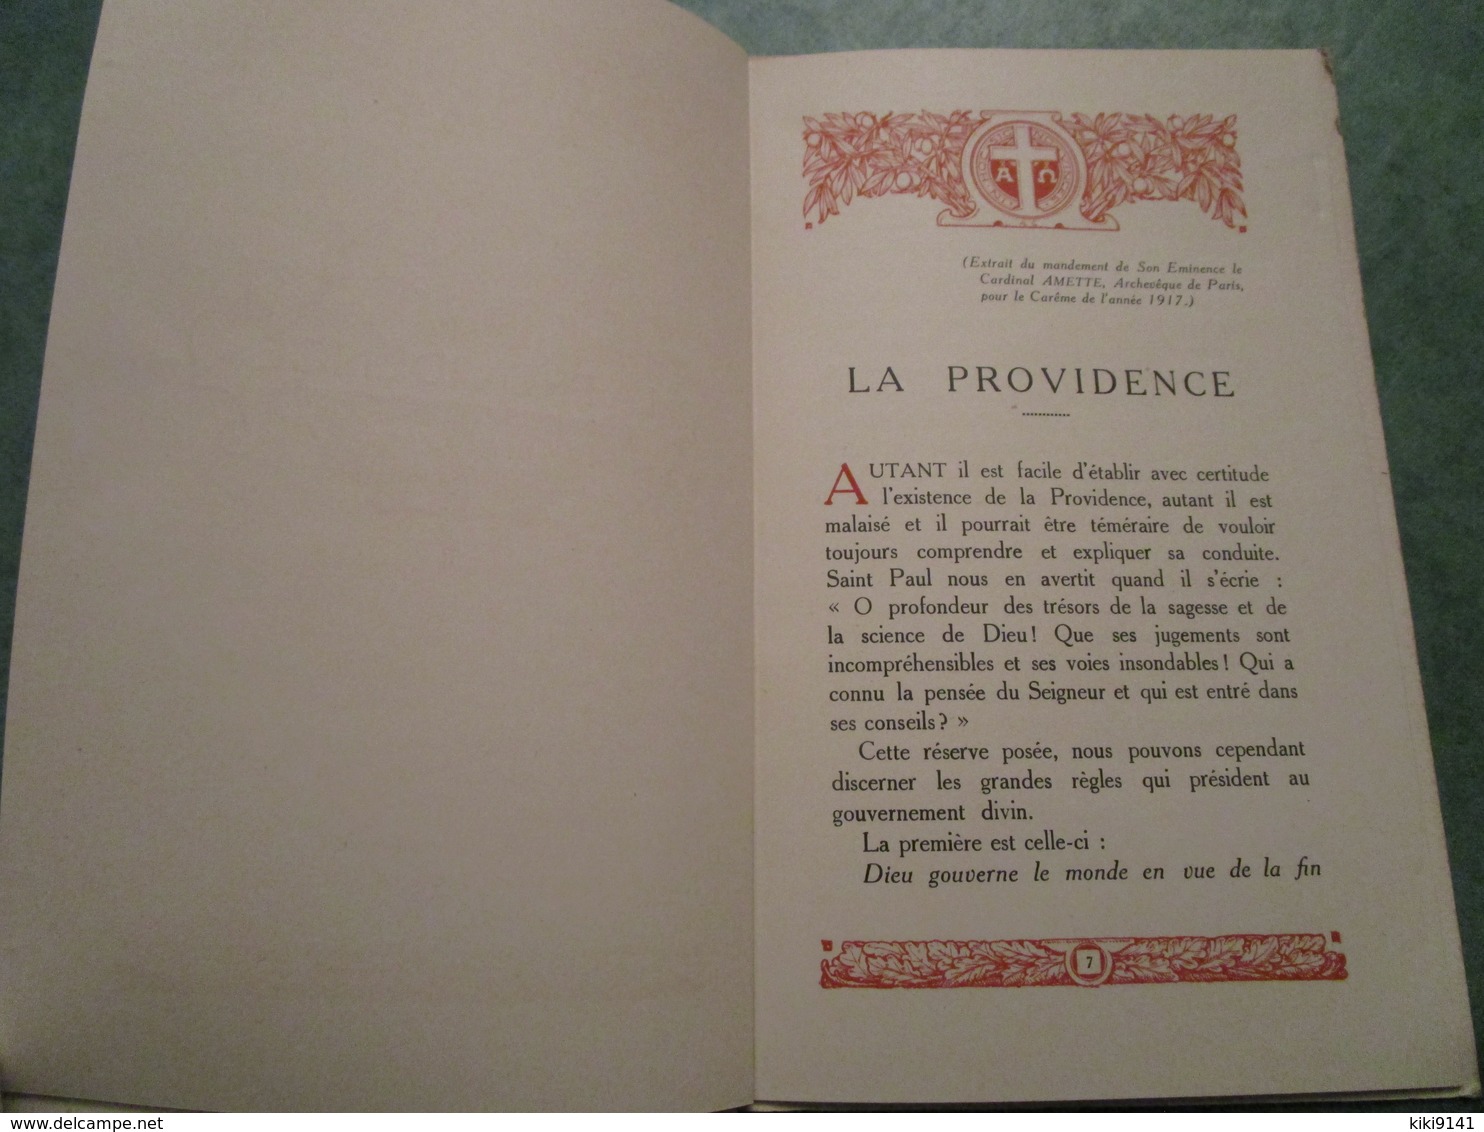 ECOLE COMMERCIALE DES FRANCS-BOURGEOIS . Souvenir de l'Année de Guerre 1916-1917 (18 pages)